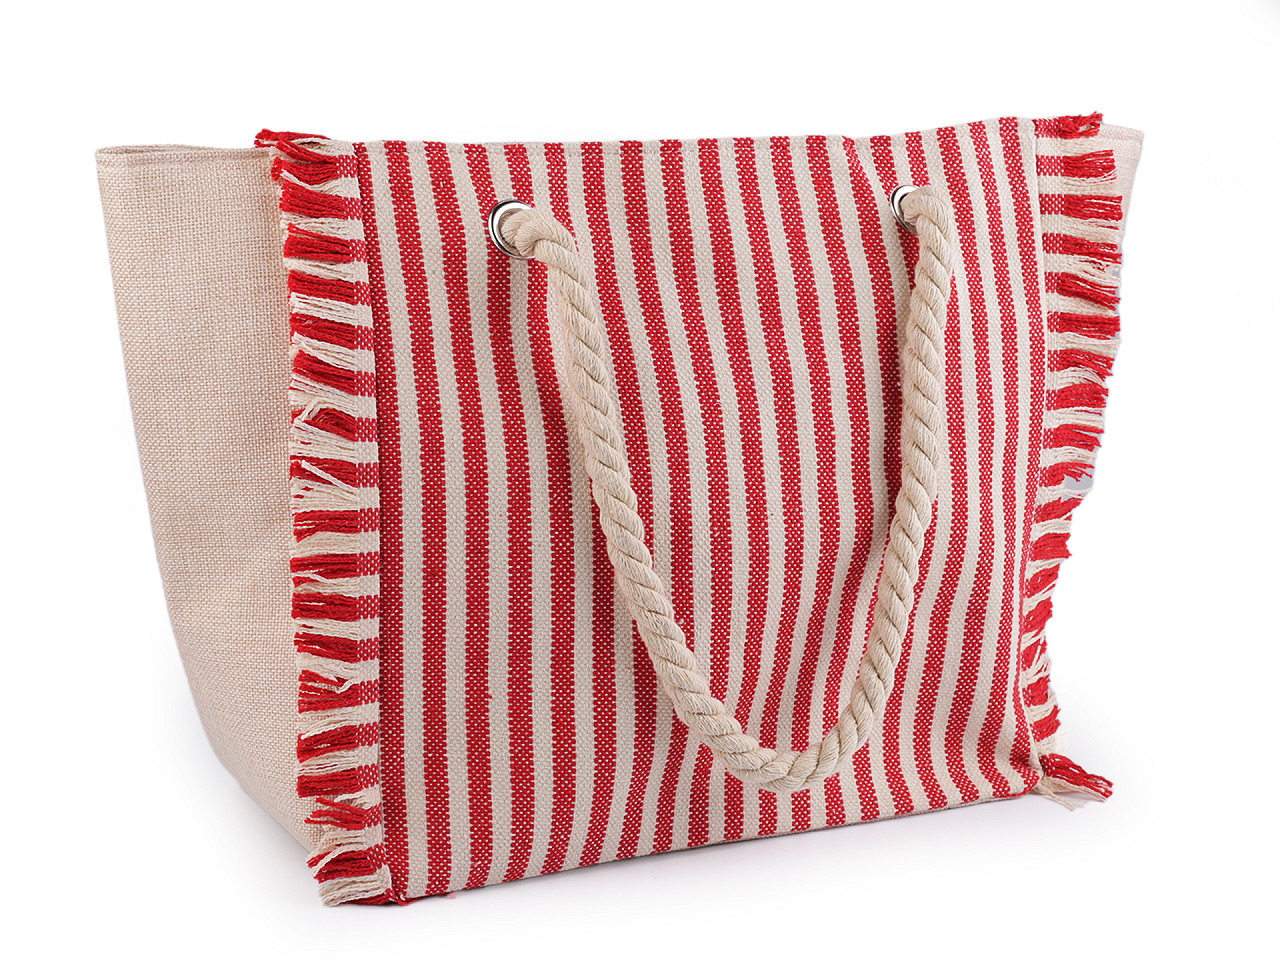 Sommertasche mit Streifen 33x52 cm, rot, 1 Stk.